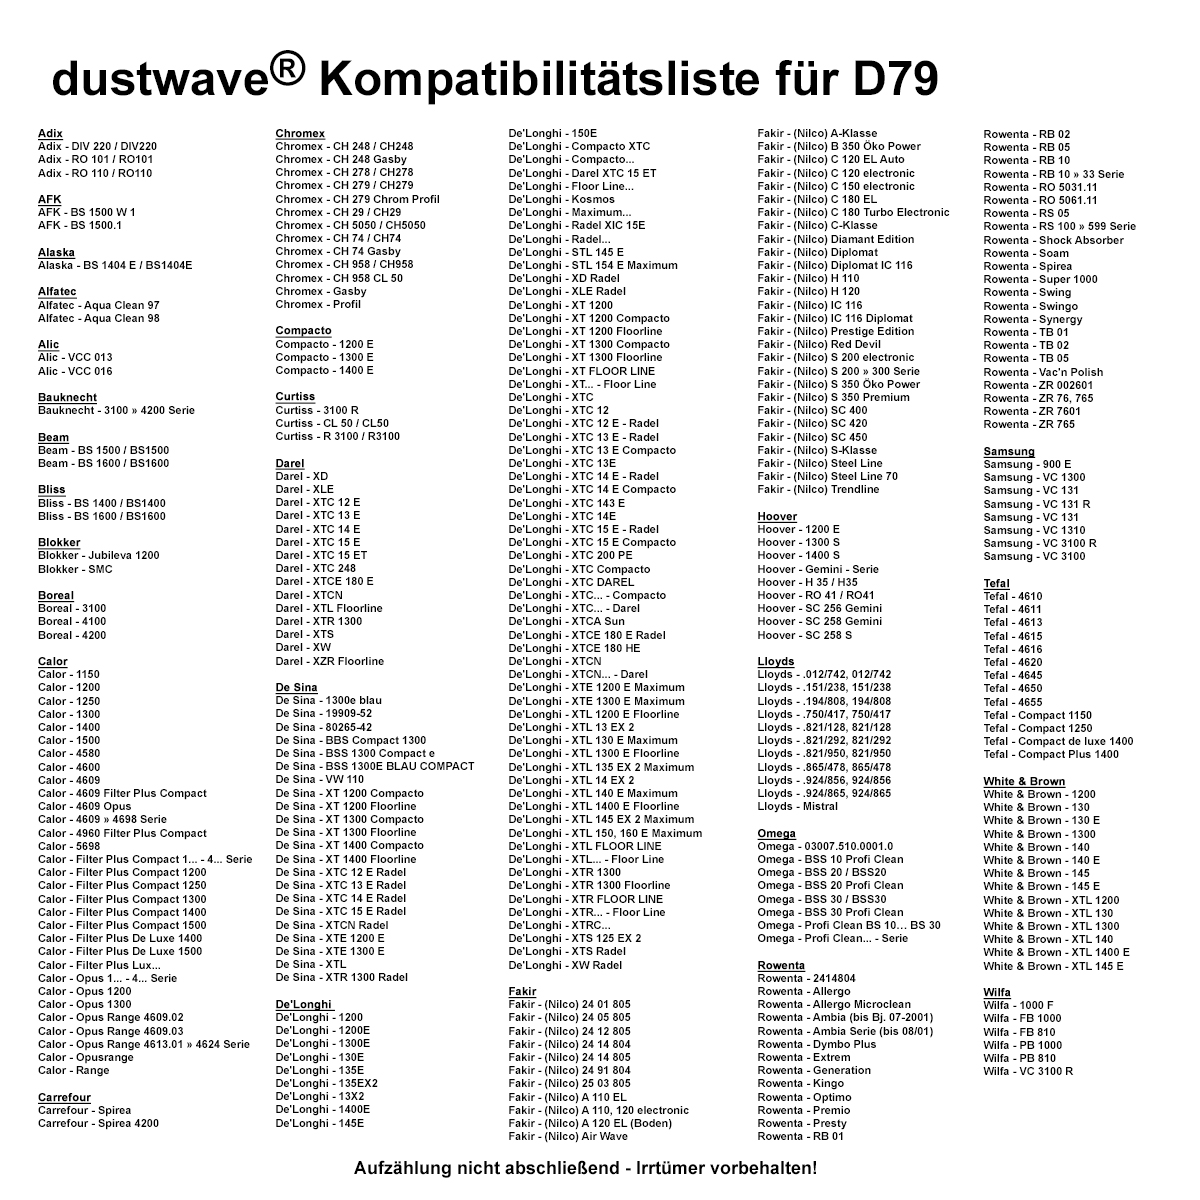 Dustwave® 40 Staubsaugerbeutel für Bliss BS 1600 / BS1600 - hocheffizient, mehrlagiges Mikrovlies mit Hygieneverschluss - Made in Germany